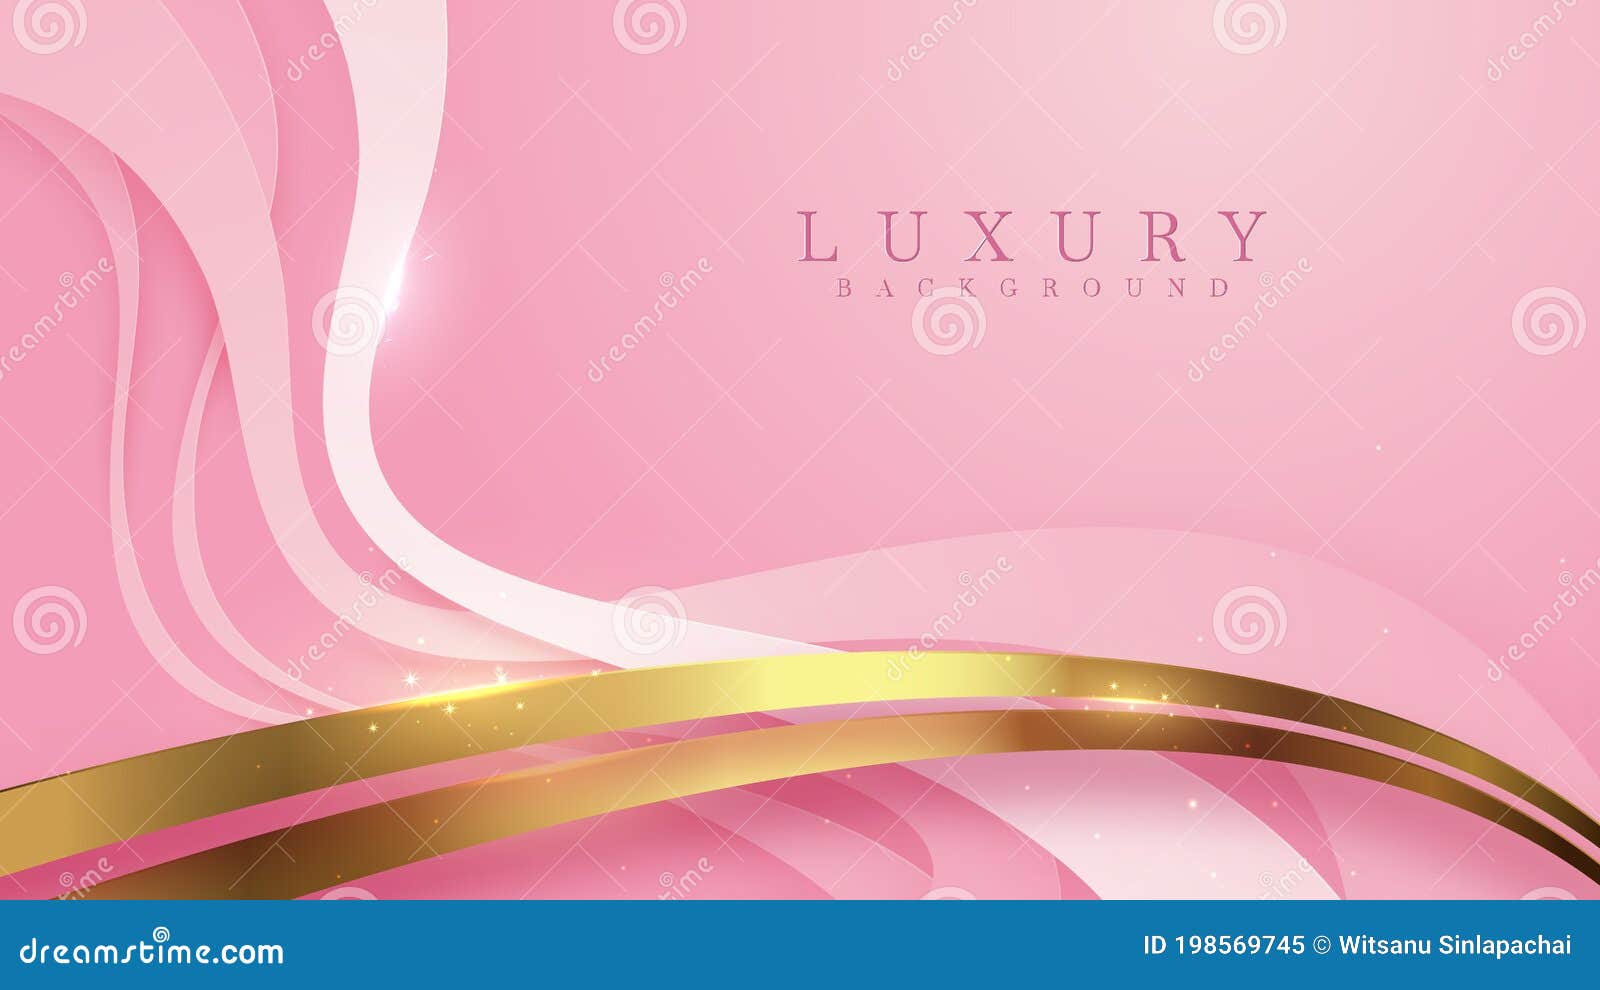 Tận hưởng vẻ đẹp của hình nền màu hồng với đường nét vàng lấp lánh và phông nền sang trọng! Thiết kế này sẽ là một lựa chọn tuyệt vời cho bất kỳ ai muốn tôn vinh sự sang trọng và thanh lịch. Đừng bỏ lỡ cơ hội để khám phá ngay bây giờ!